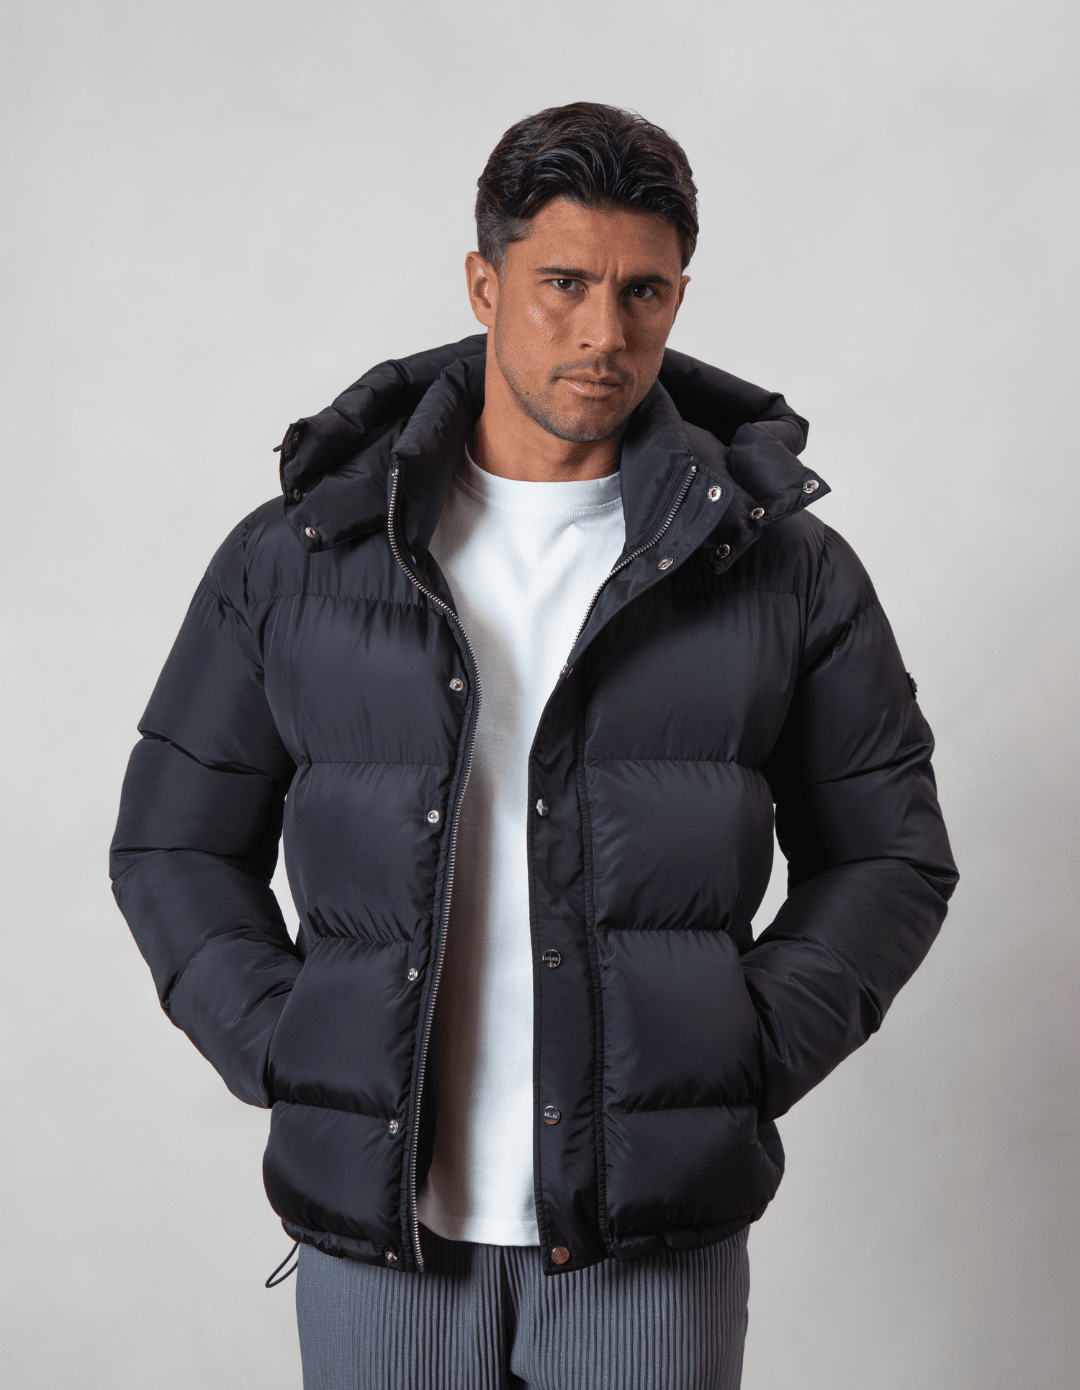 Men's Puffer Jackets & Coats